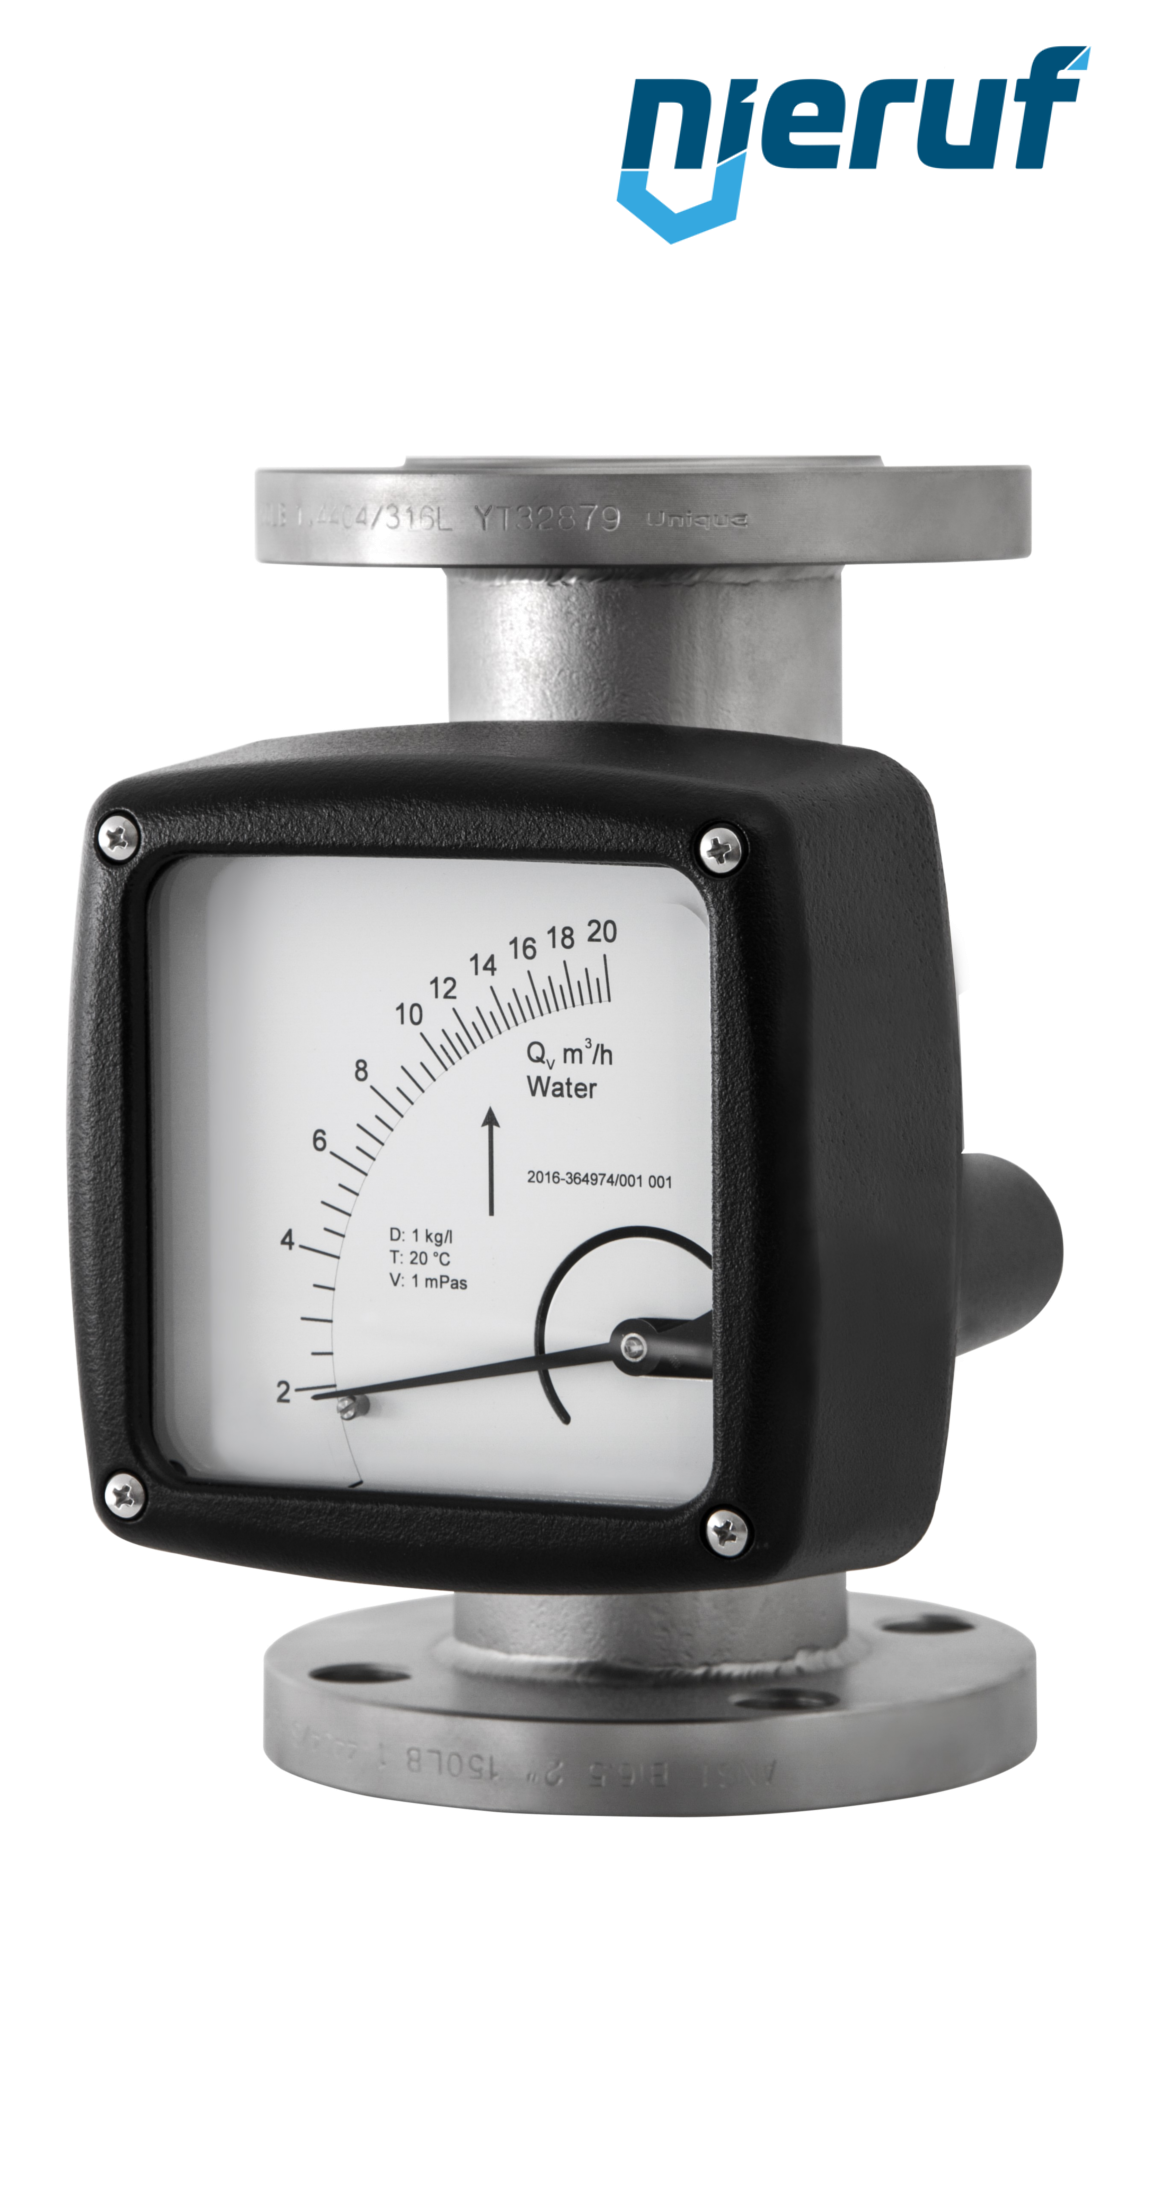 misuratore di portata / flussometro flangiato DN100-attacco 135,0 - 1350,0 m3/h tubo DN80 aria